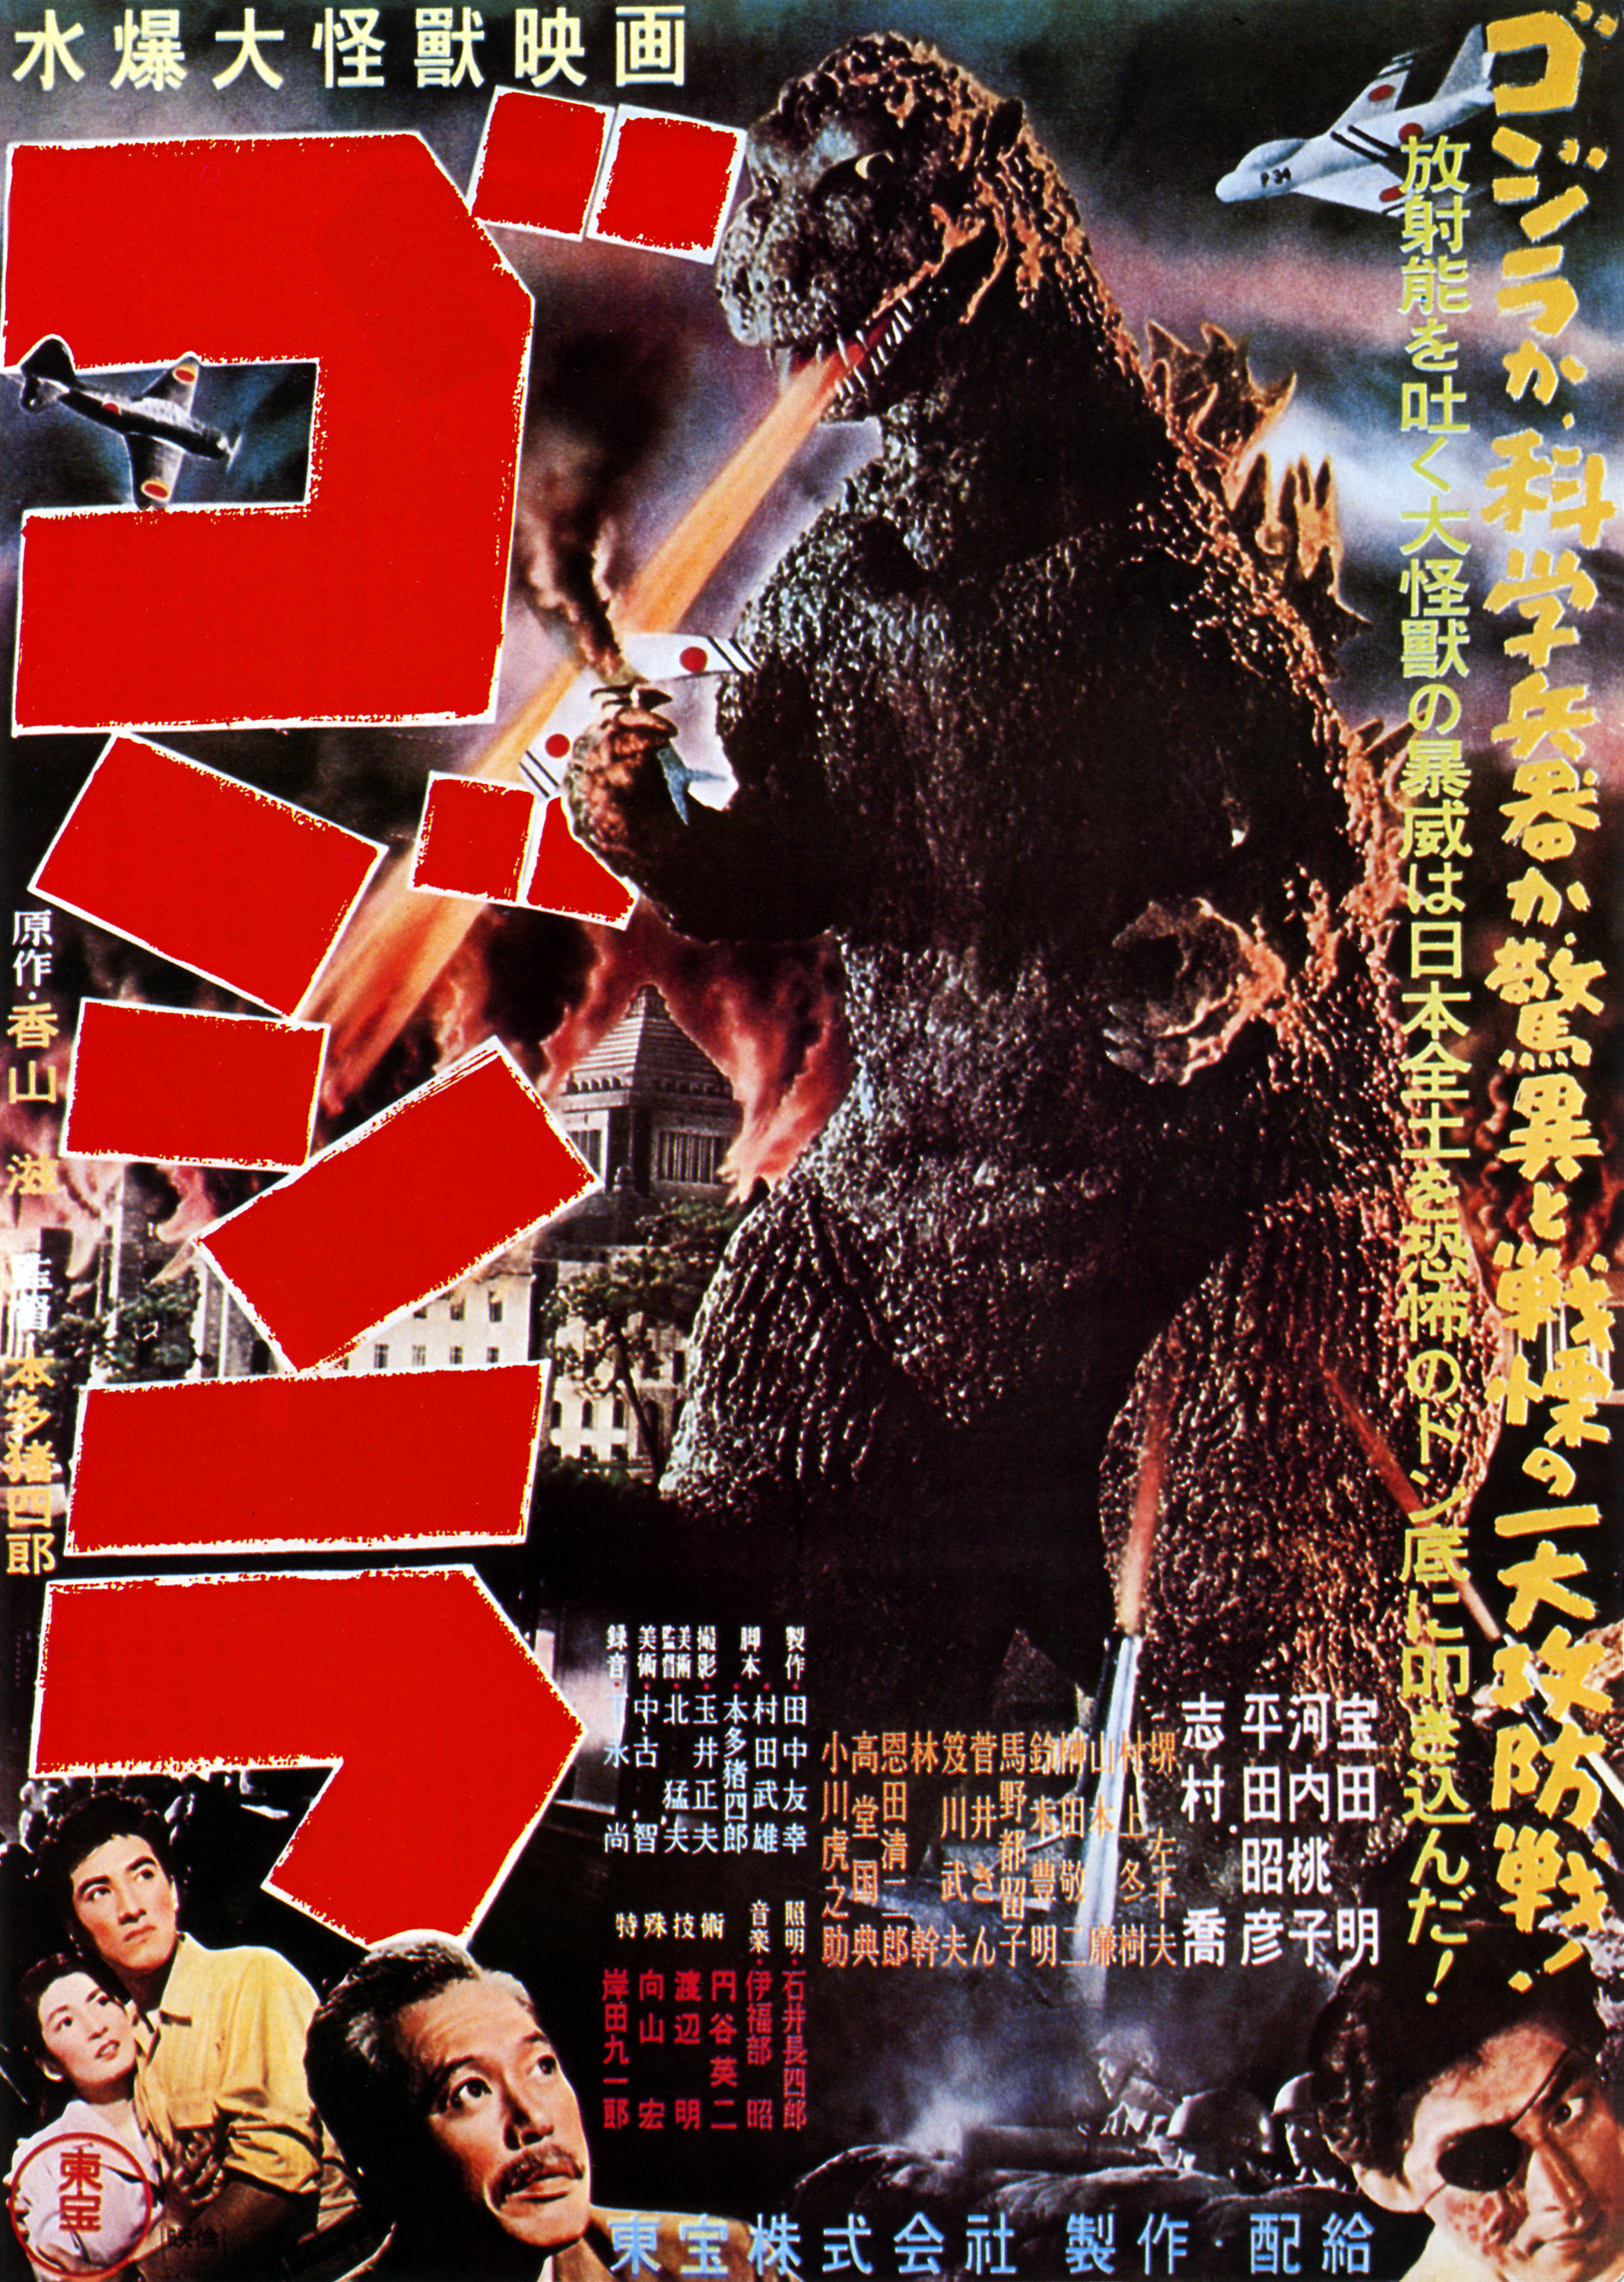 Godzilla (1954) | Wikizilla, the kaiju encyclopedia